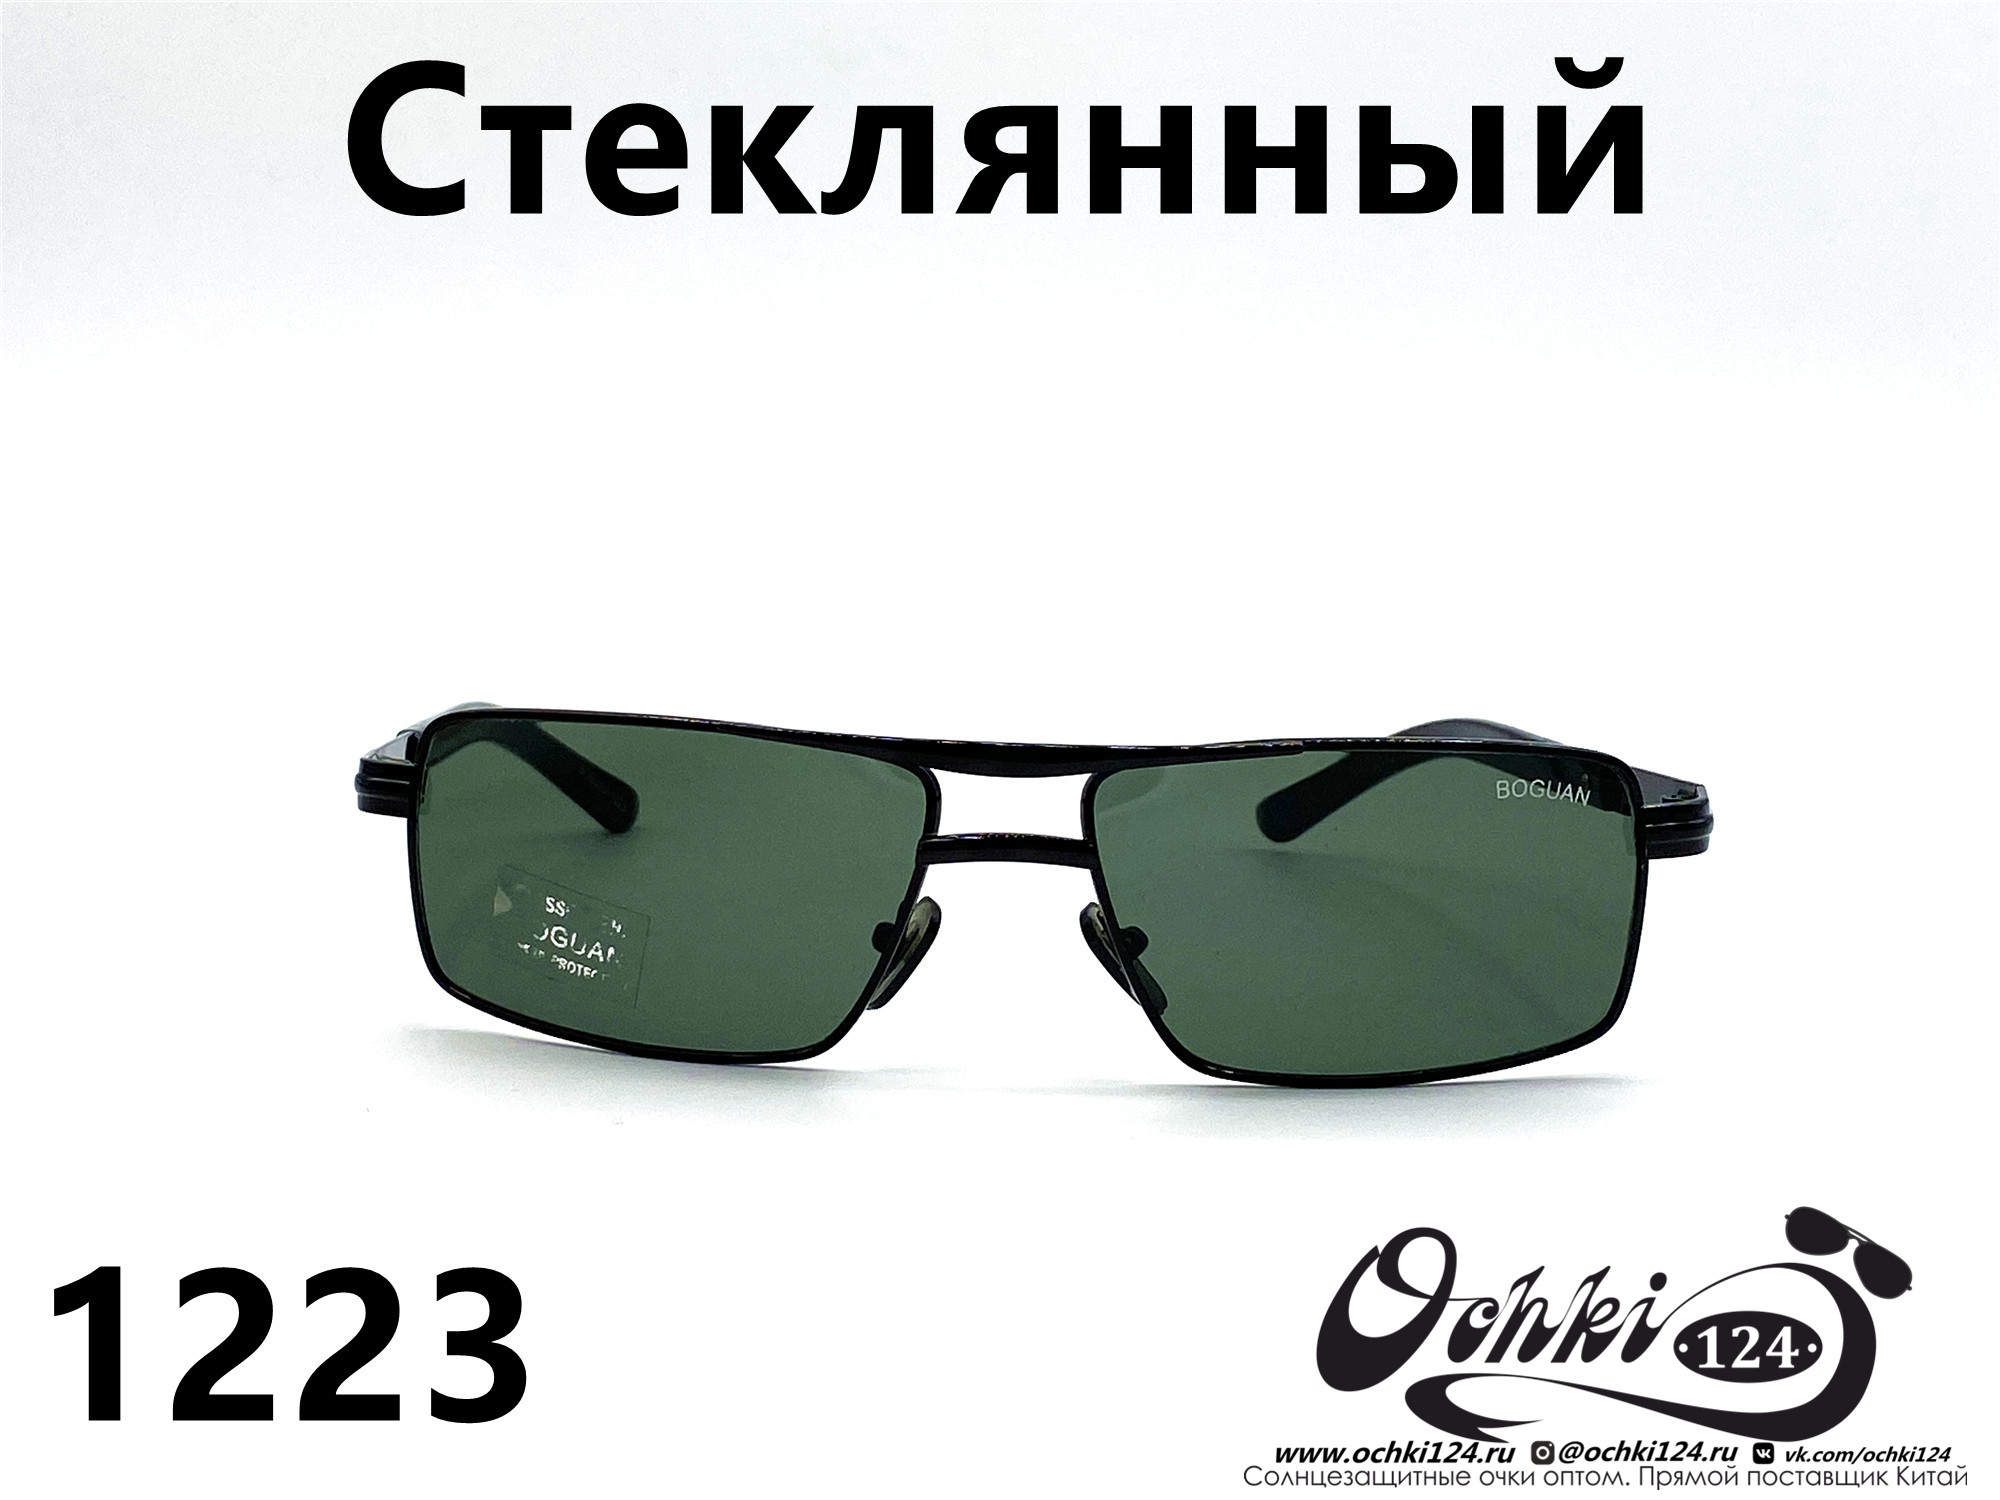  Солнцезащитные очки картинка 2022 Мужские Стеклянные Квадратные Boguan 1223-1 